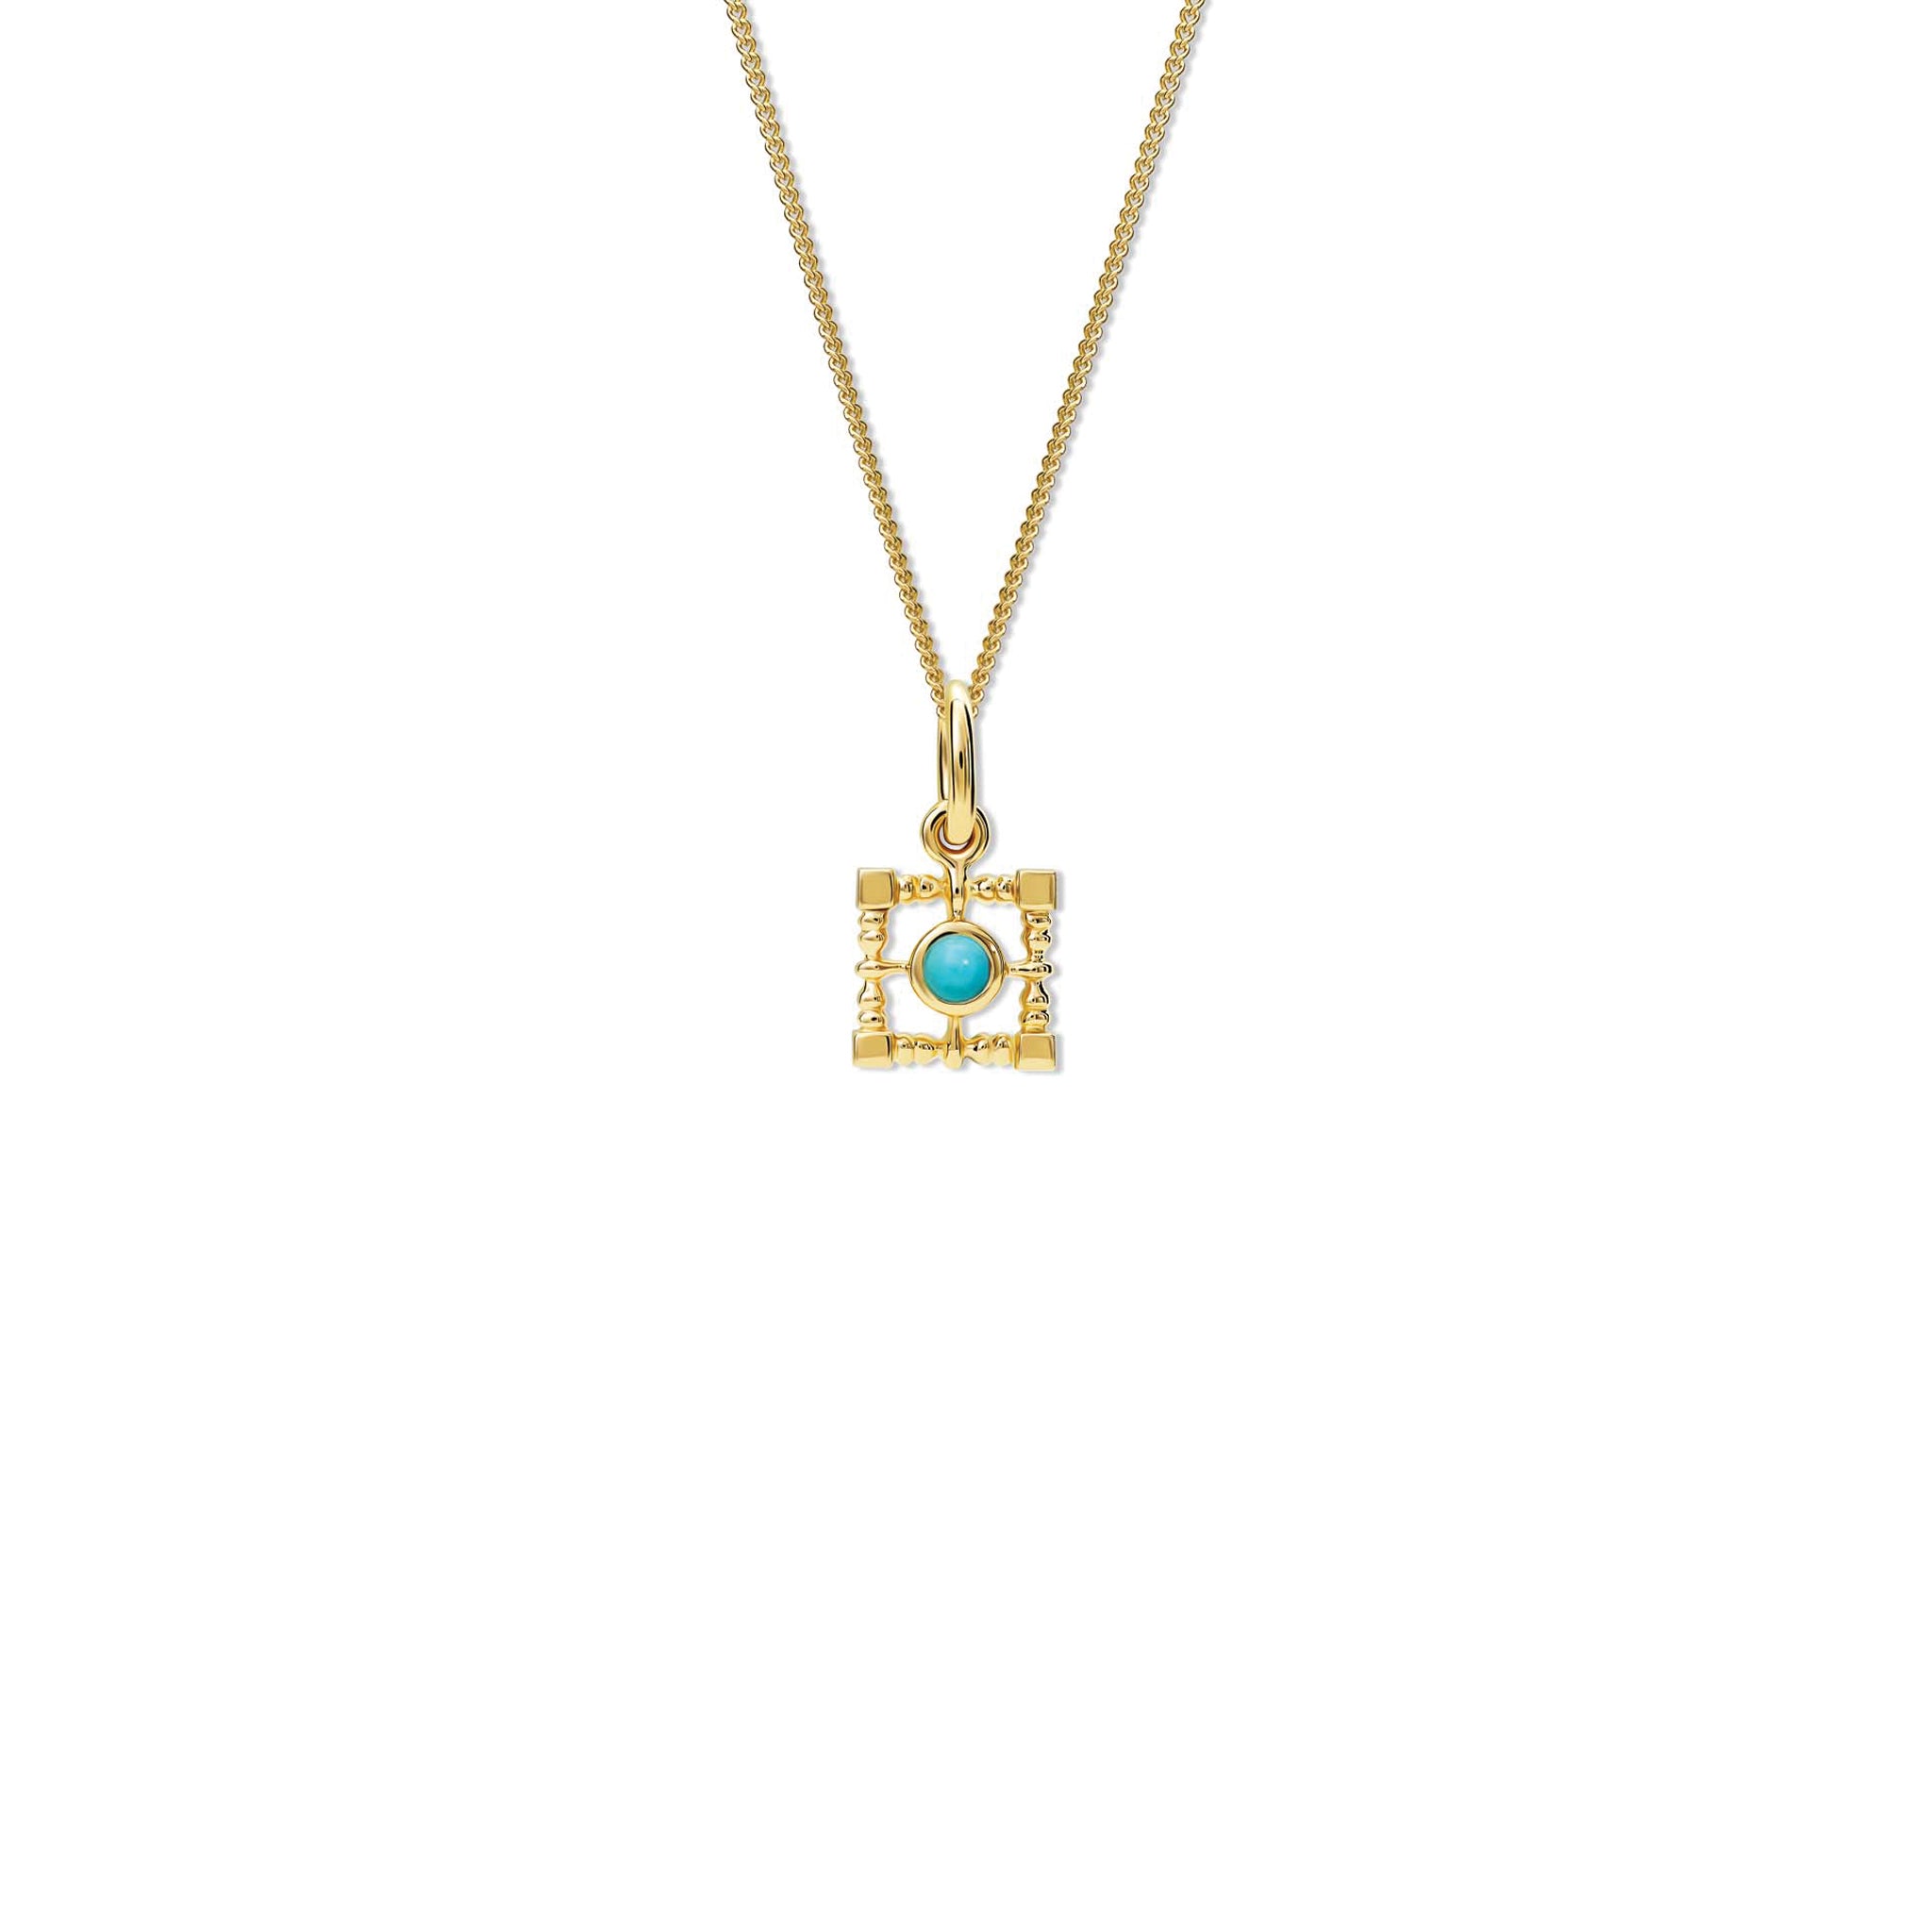 Mashrabiya Trellis Square Necklace Pendant Yellow Gold - Turquoise